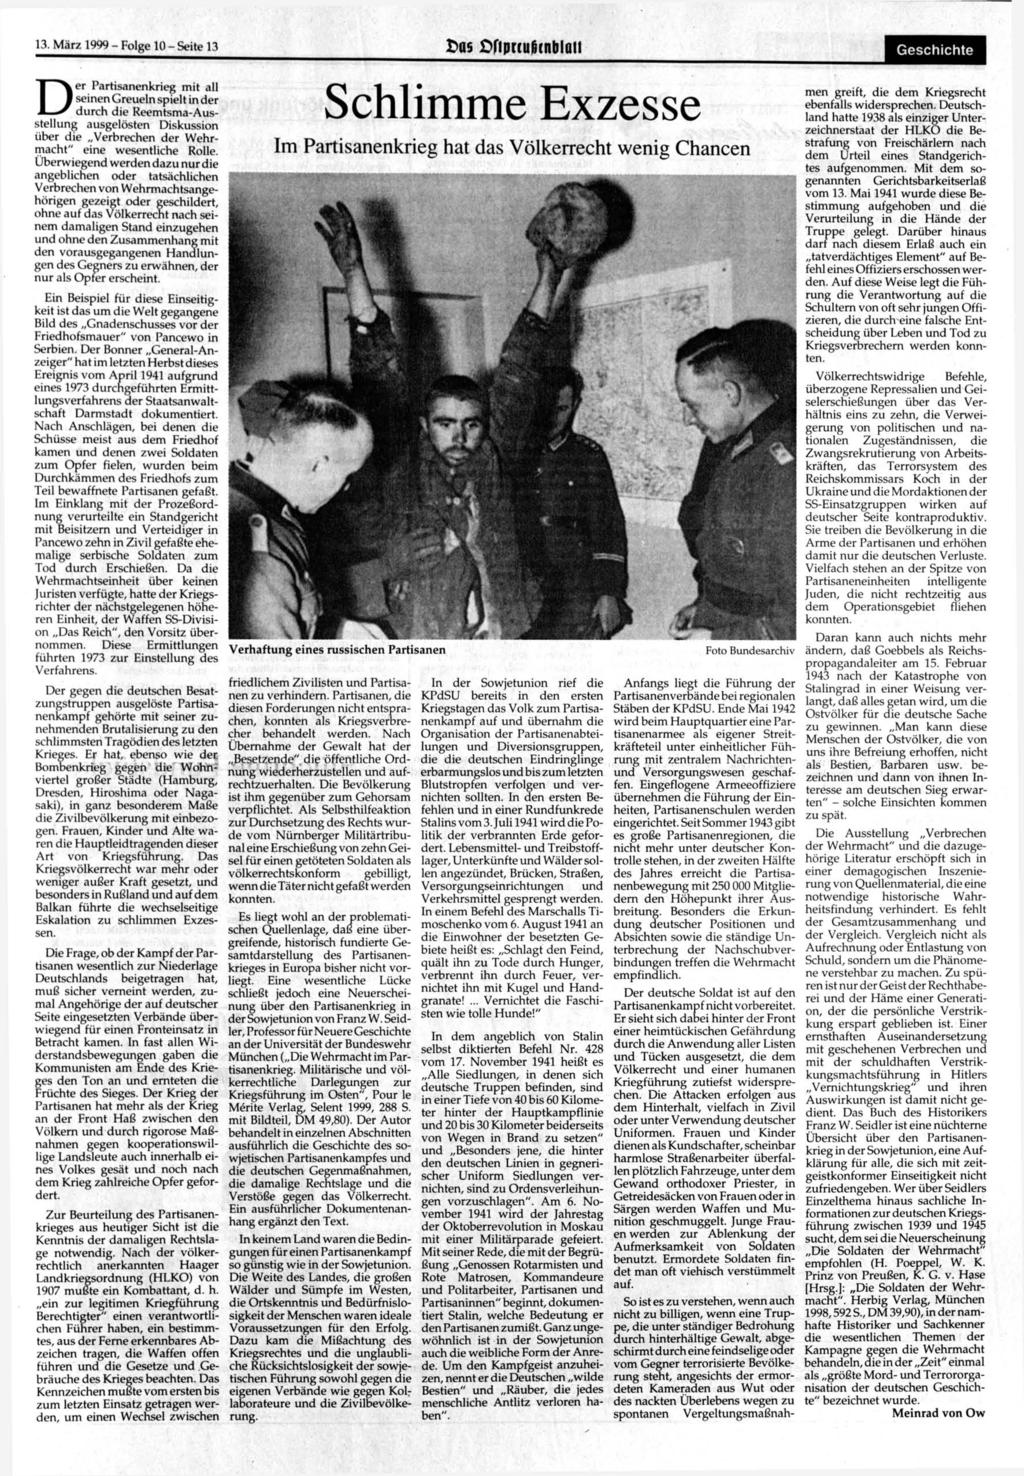 13. März 1999 - Folge 10 - Seite 13 Das Dftpnufitnblaii Geschichte Der Partisanenkrieg mit all seinen Greueln spielt in der durch die Reemtsma-Ausstellung ausgelösten Diskussion über die Verbrechen